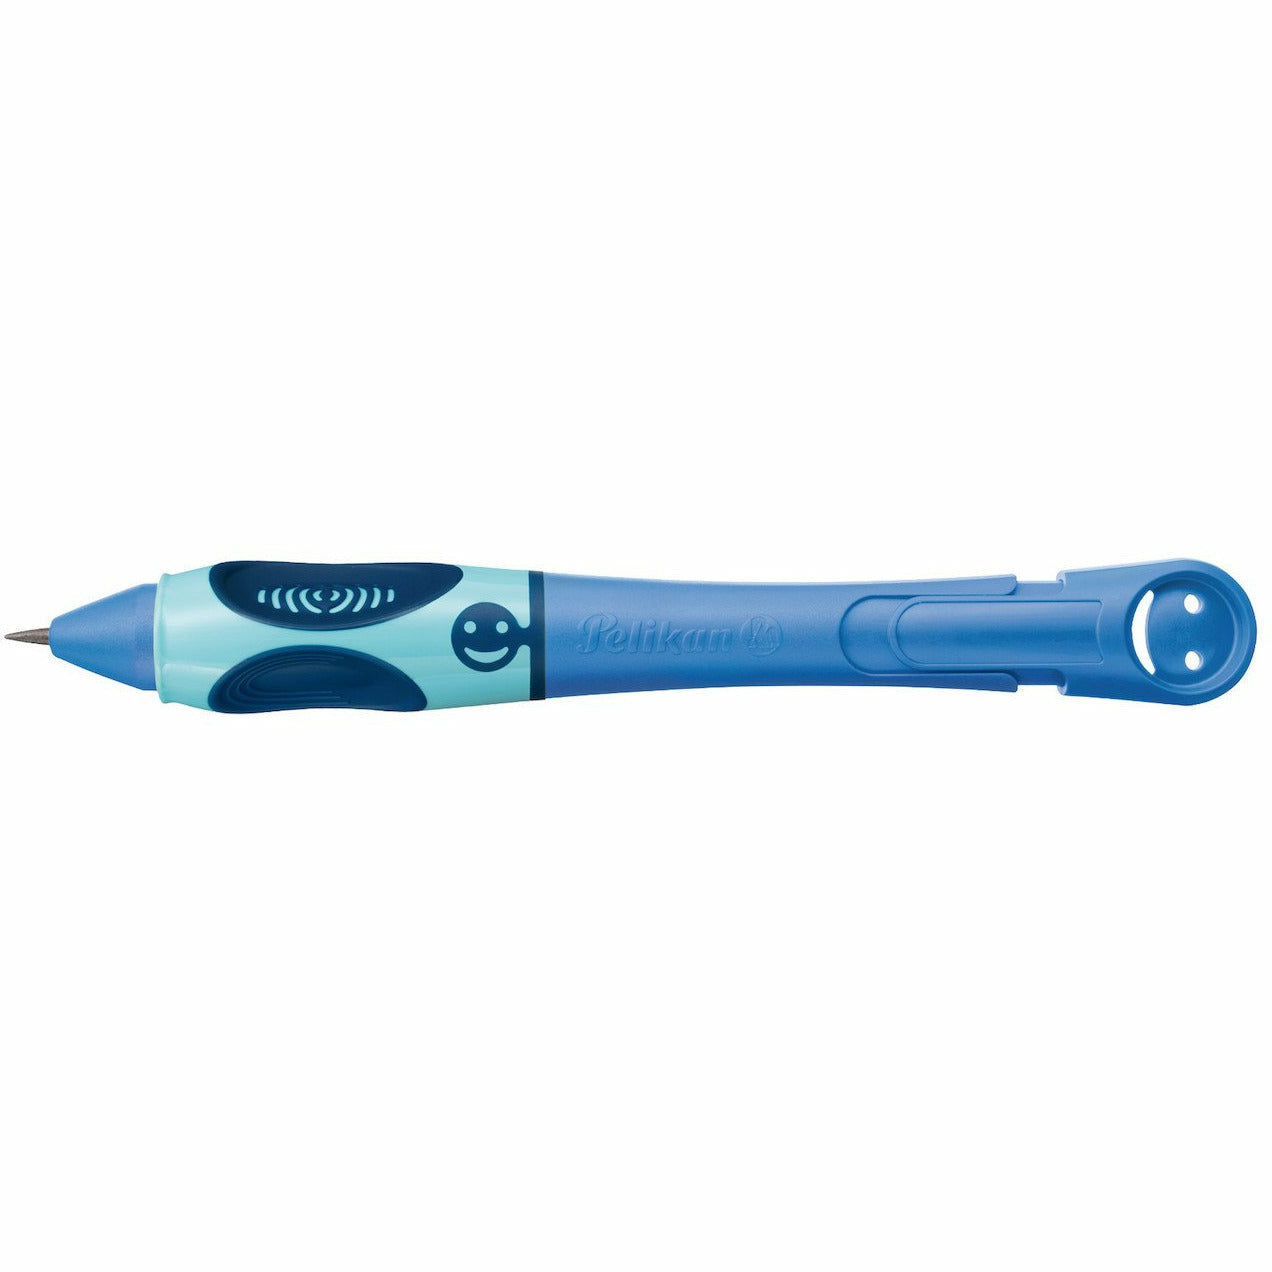 Bleistift Griffix 2 Bluesea/Blau B2BSR für Rechtshänder in Faltschachtel